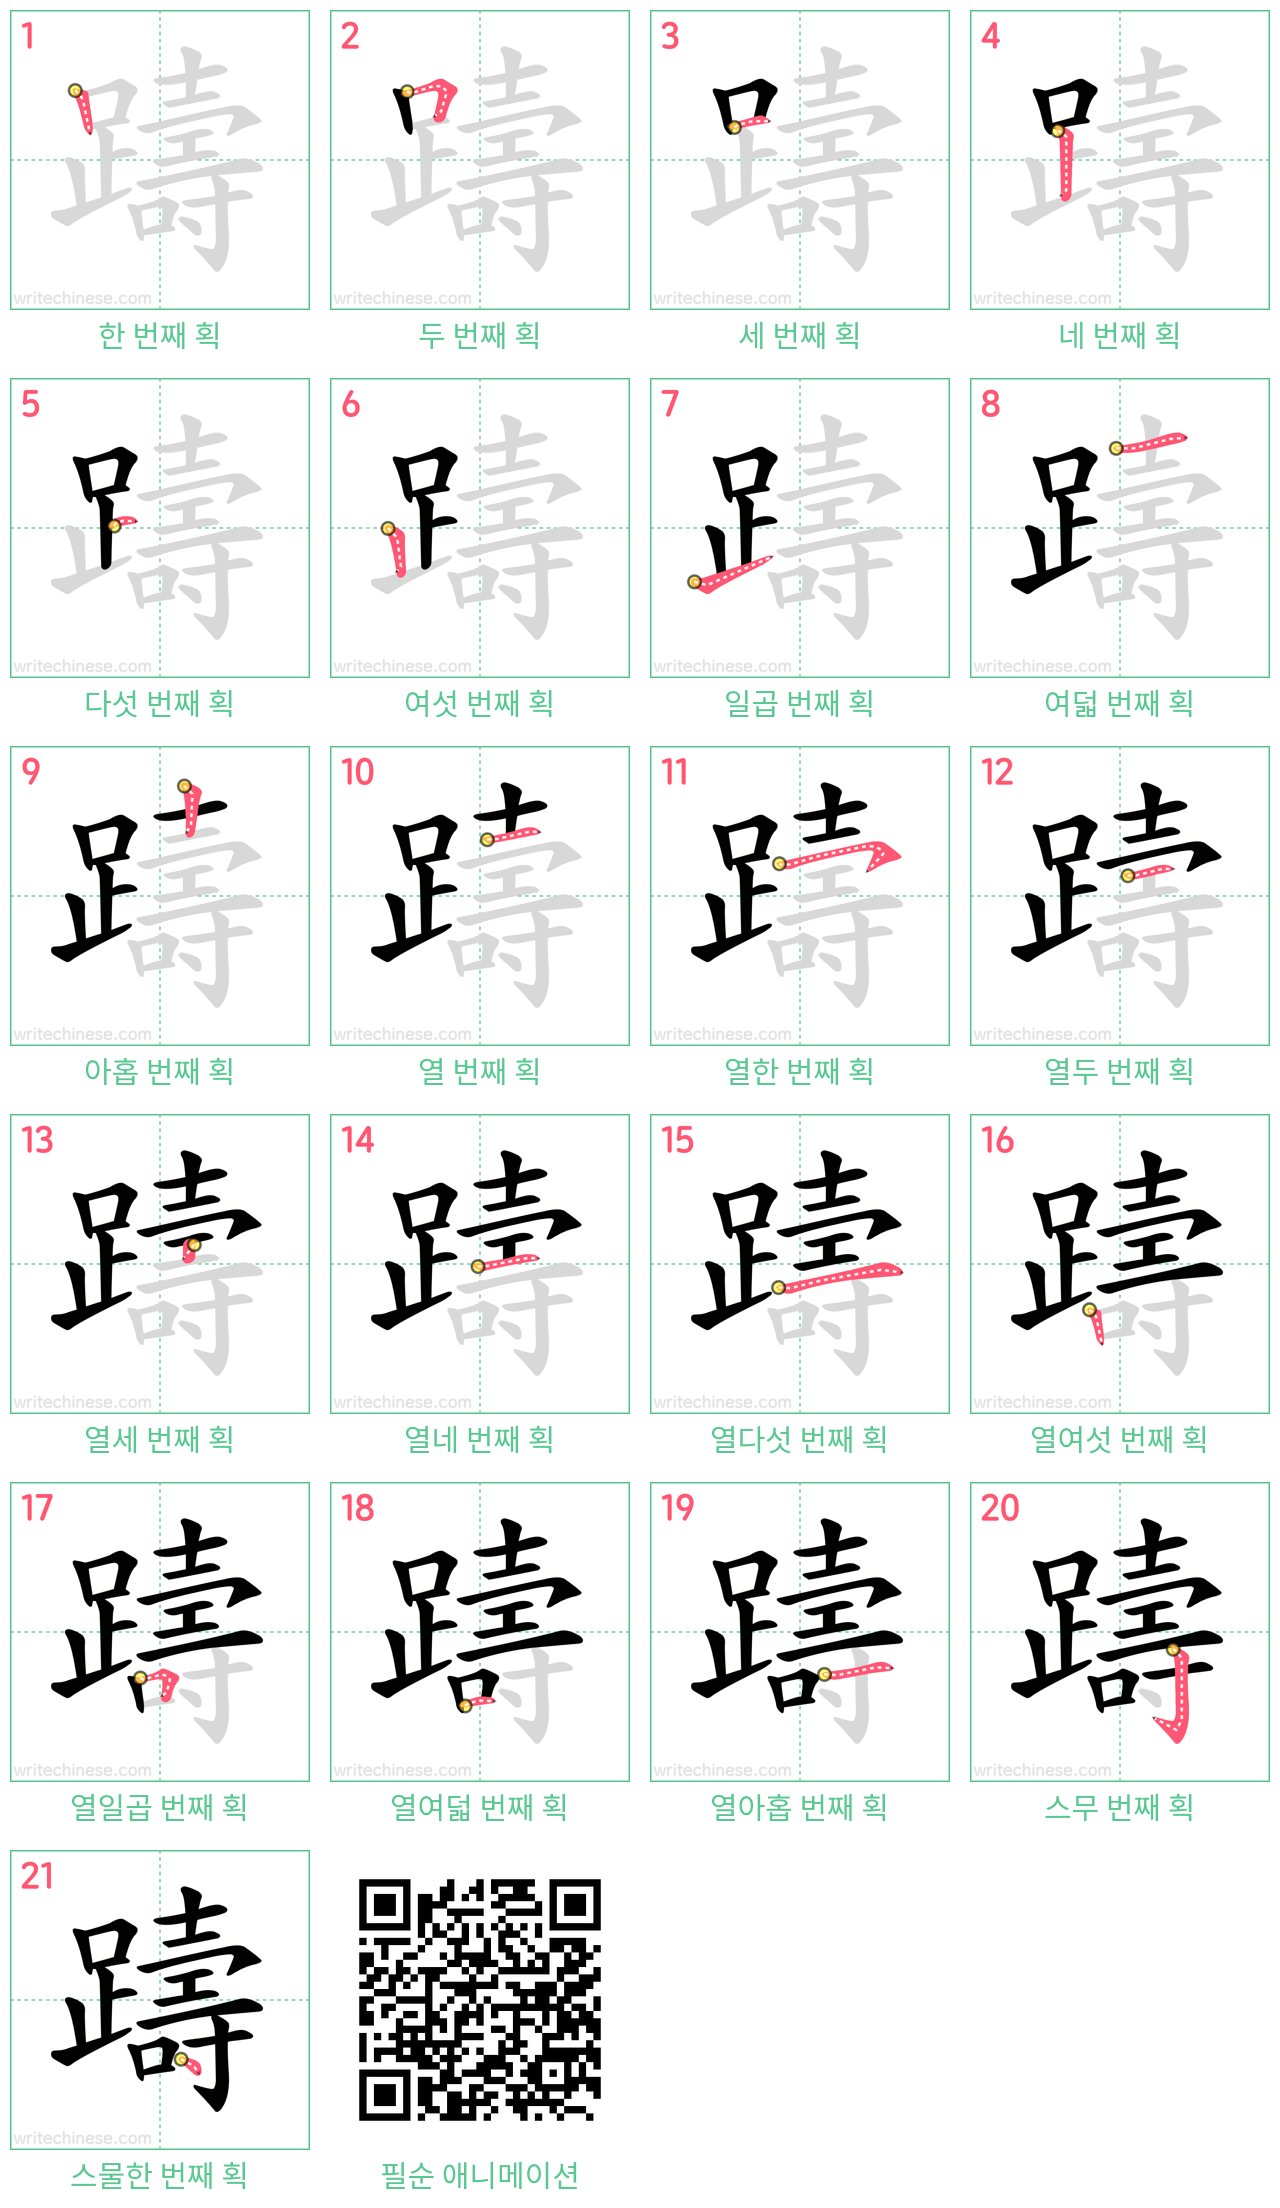 躊 step-by-step stroke order diagrams